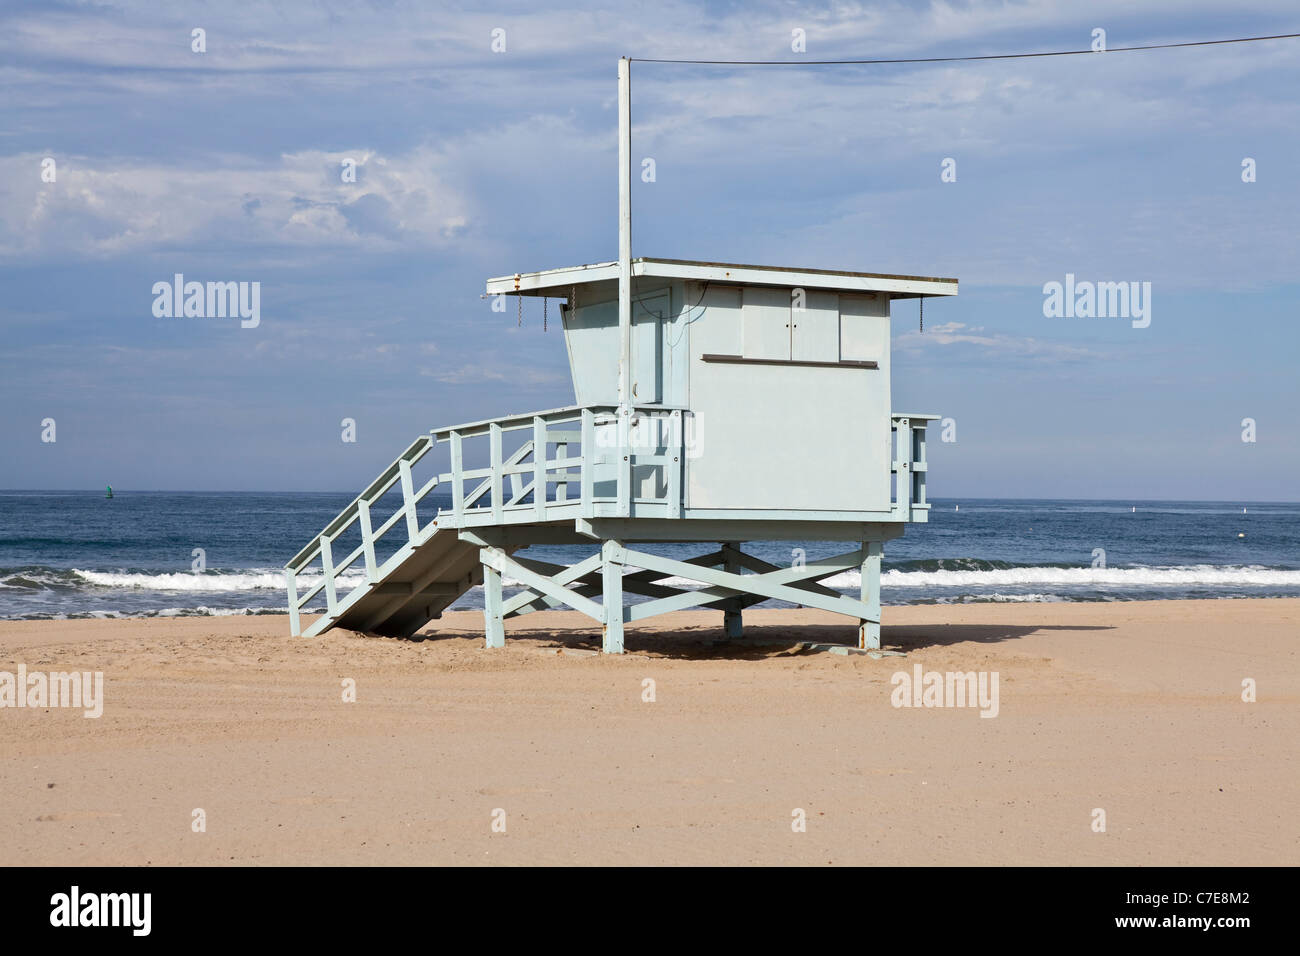 Santa Monica beach lifeguard tower dans le sud de la Californie. Banque D'Images